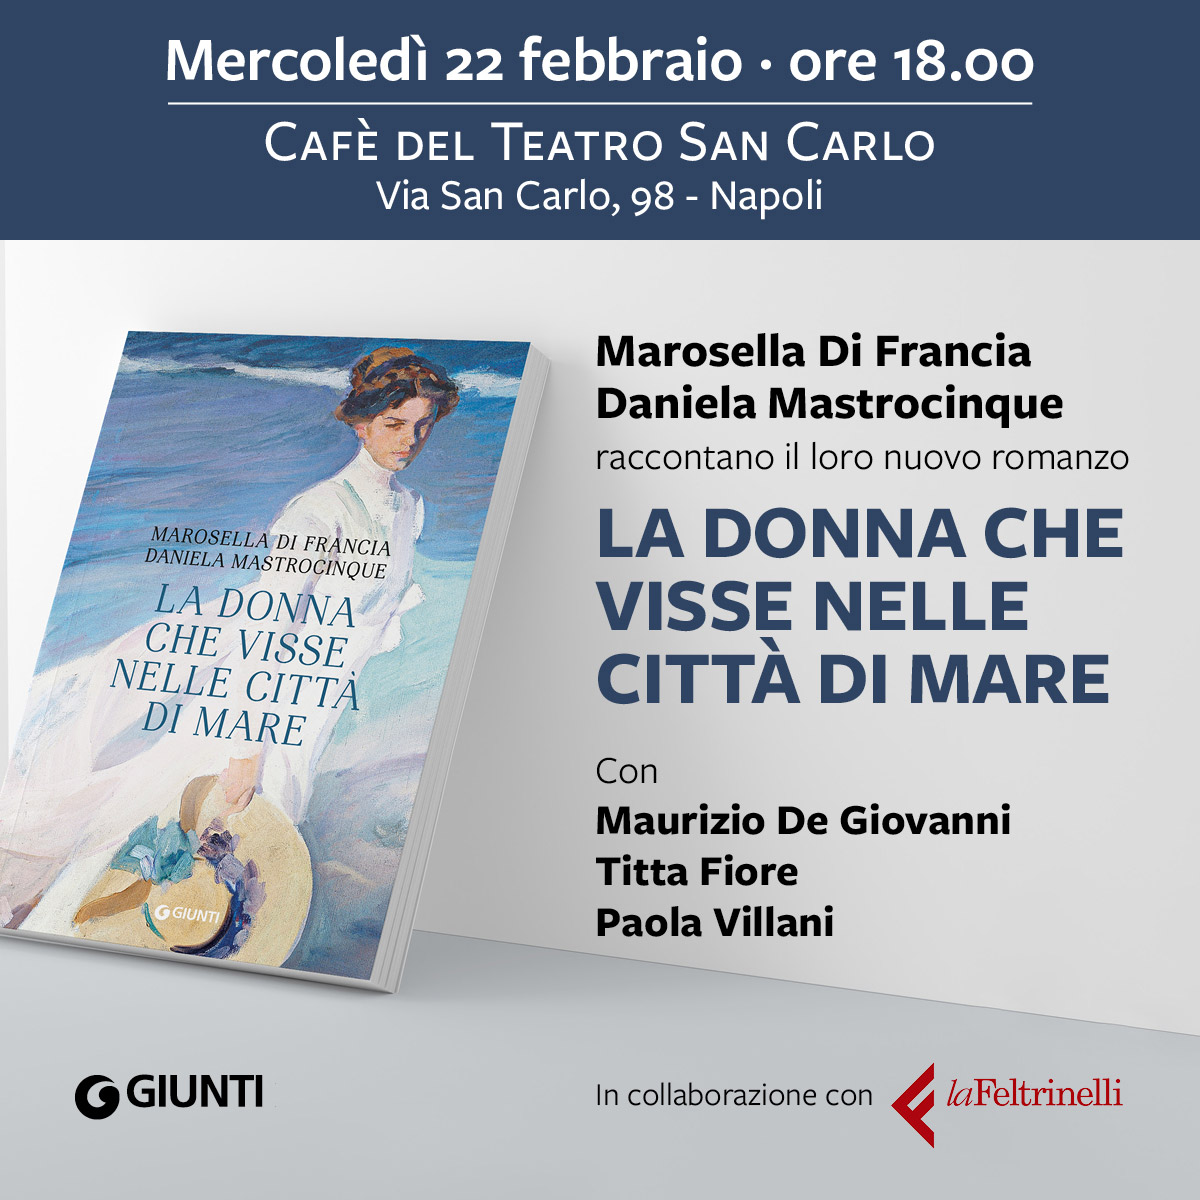 Marosella Di Francia e Daniela Mastrocinque presentano per la prima volta " La donna che visse nelle città di mare". Appuntamento a Napoli